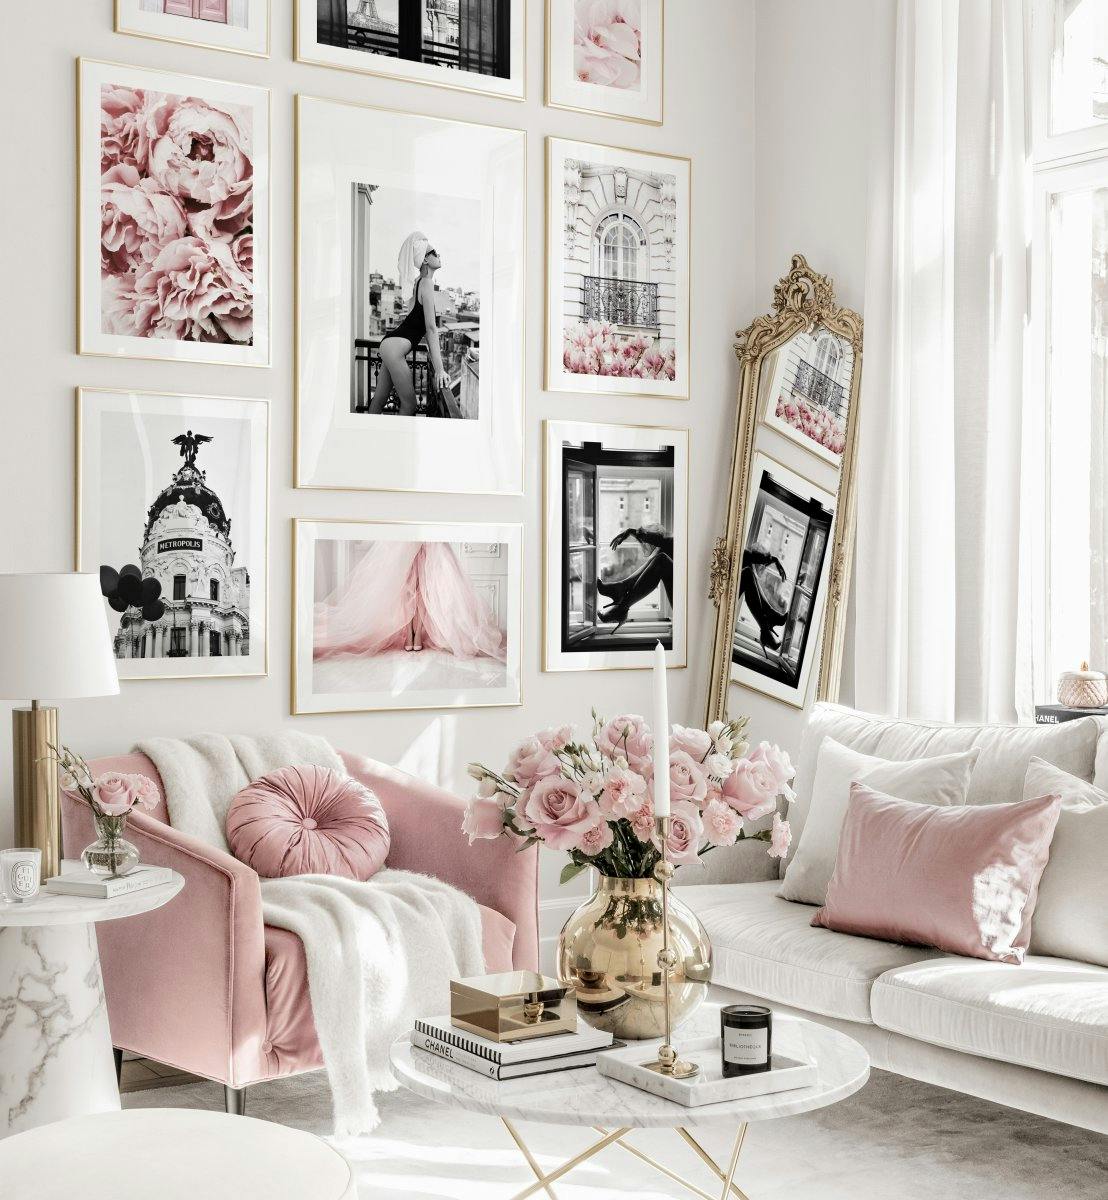 Décoration murale tendance rose posters de mode affiches fleurs cadres dorés